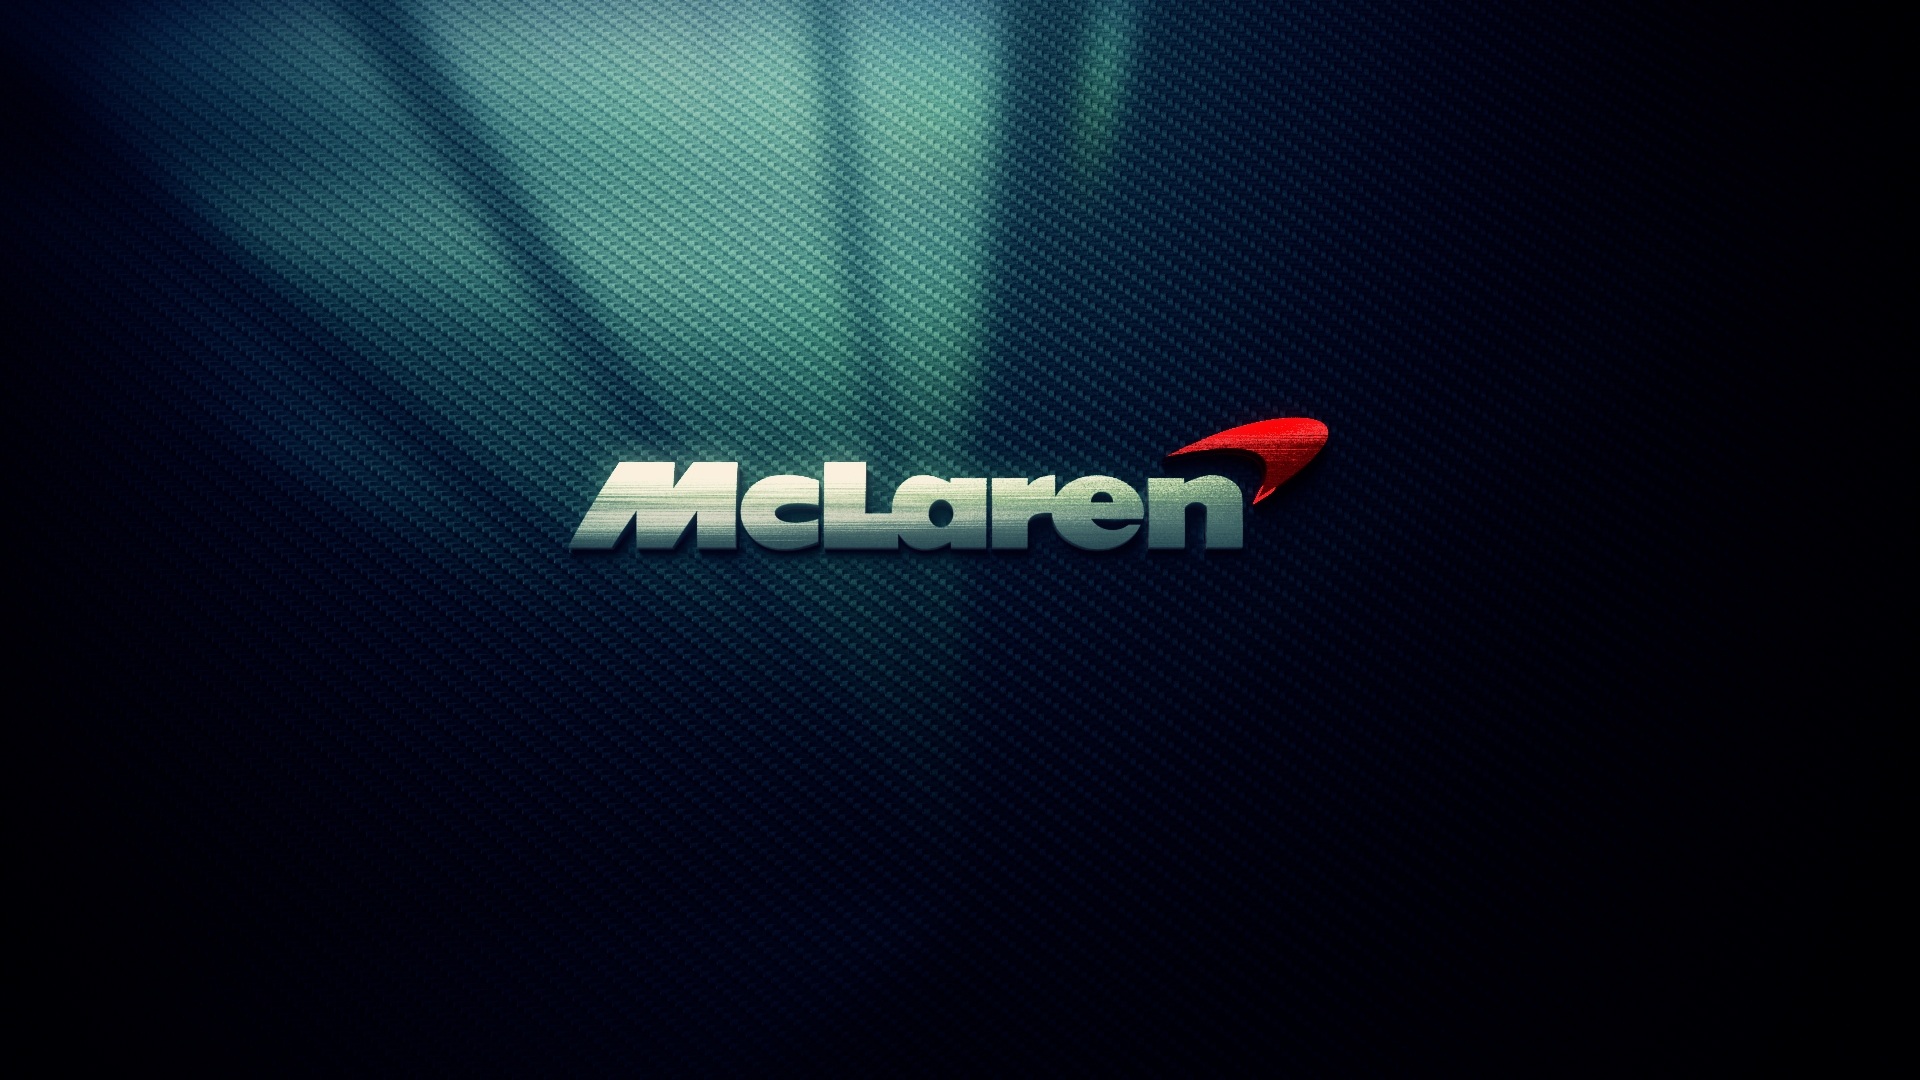 Vehicles McLaren 1920x1080